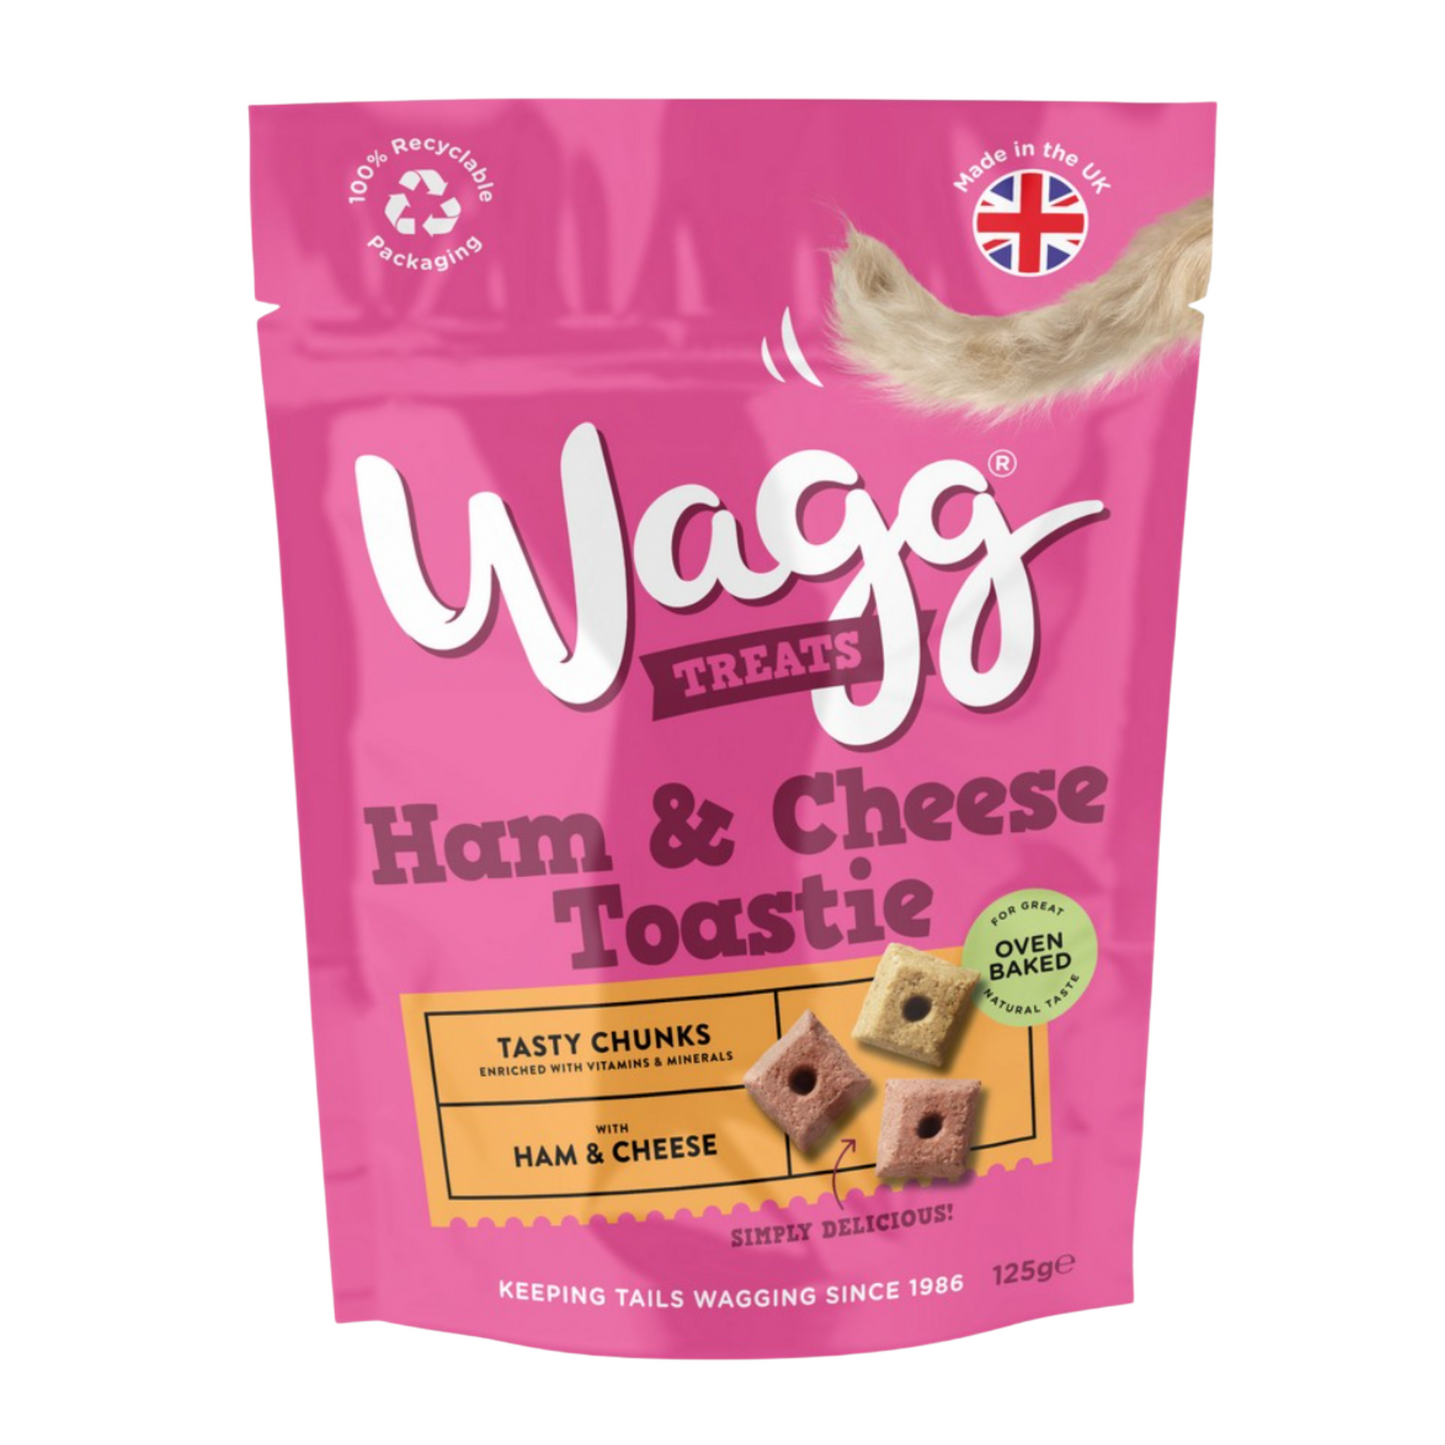 Wagg Dog Treats Ham & Cheese Toastie Tasty Chunks 125g